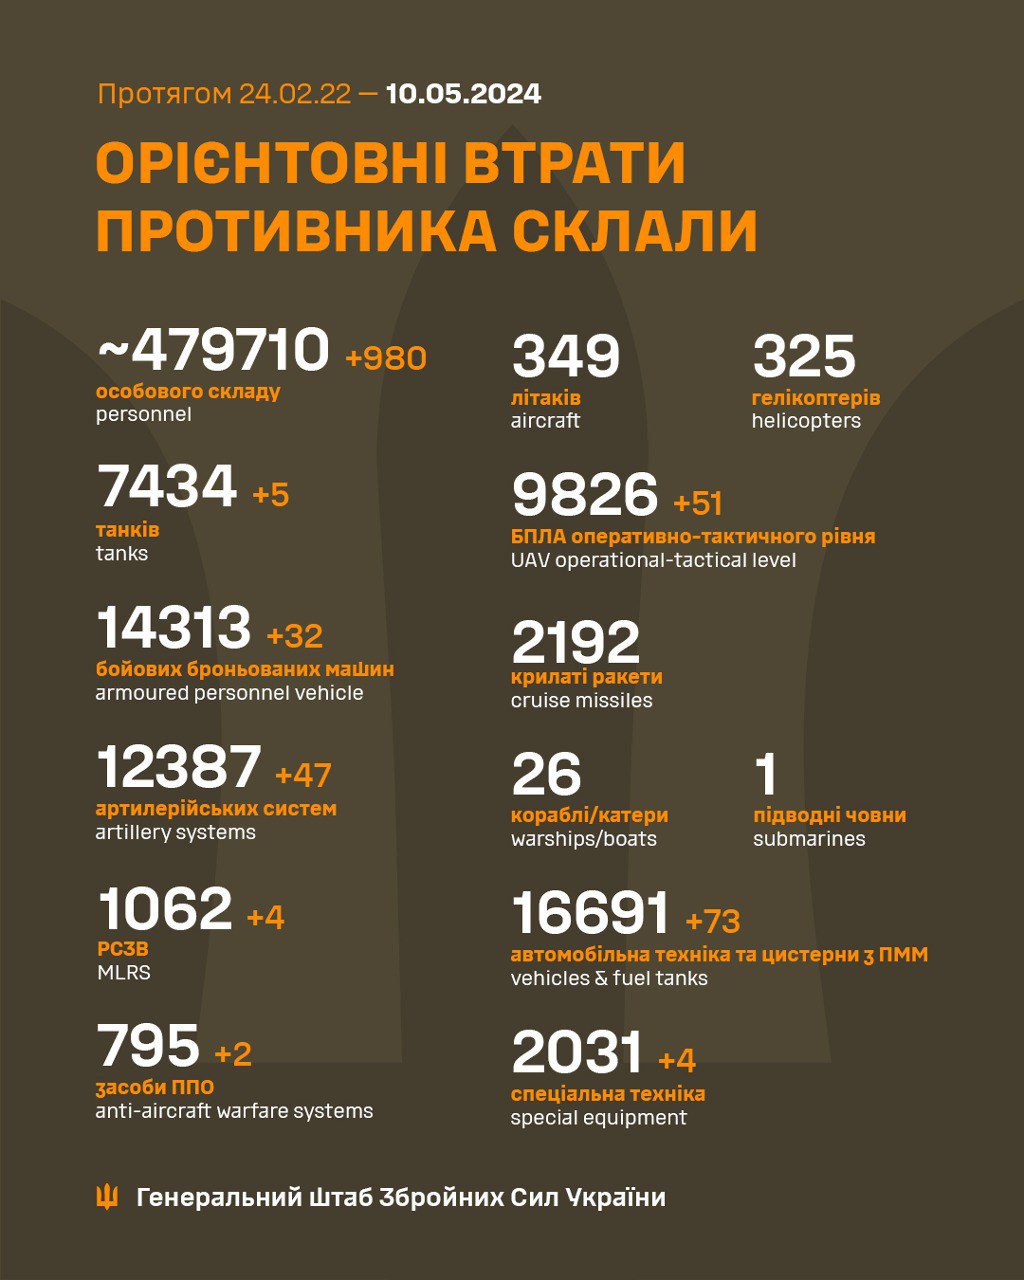 Еще 47 артсистем и почти тысяча оккупантов: Генштаб ВСУ обновил потери РФ в Украине